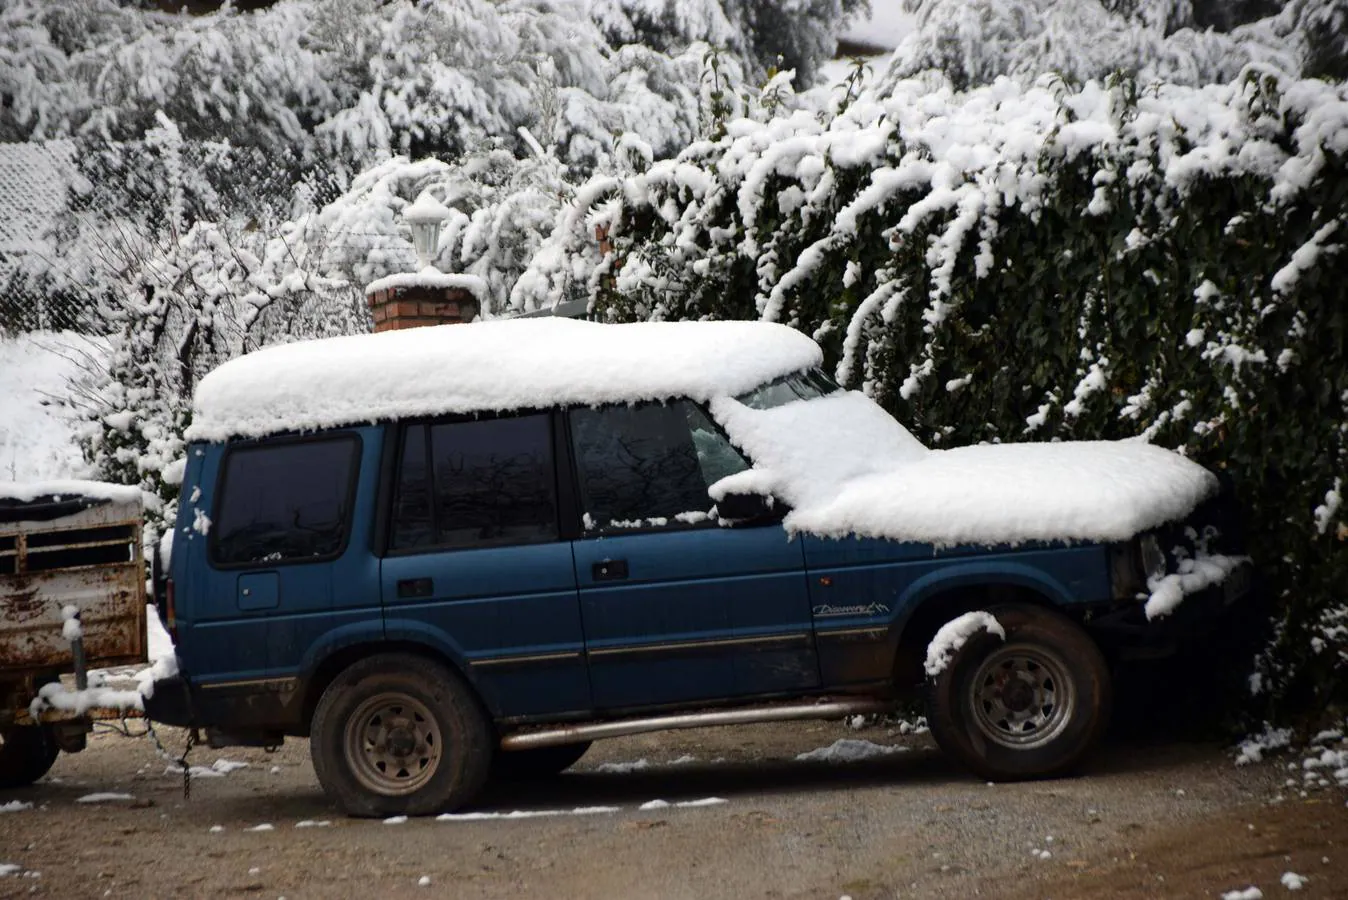 Ventorros de San José, Montefrío y la carretera a Tocón, tras la nevada de este domingo